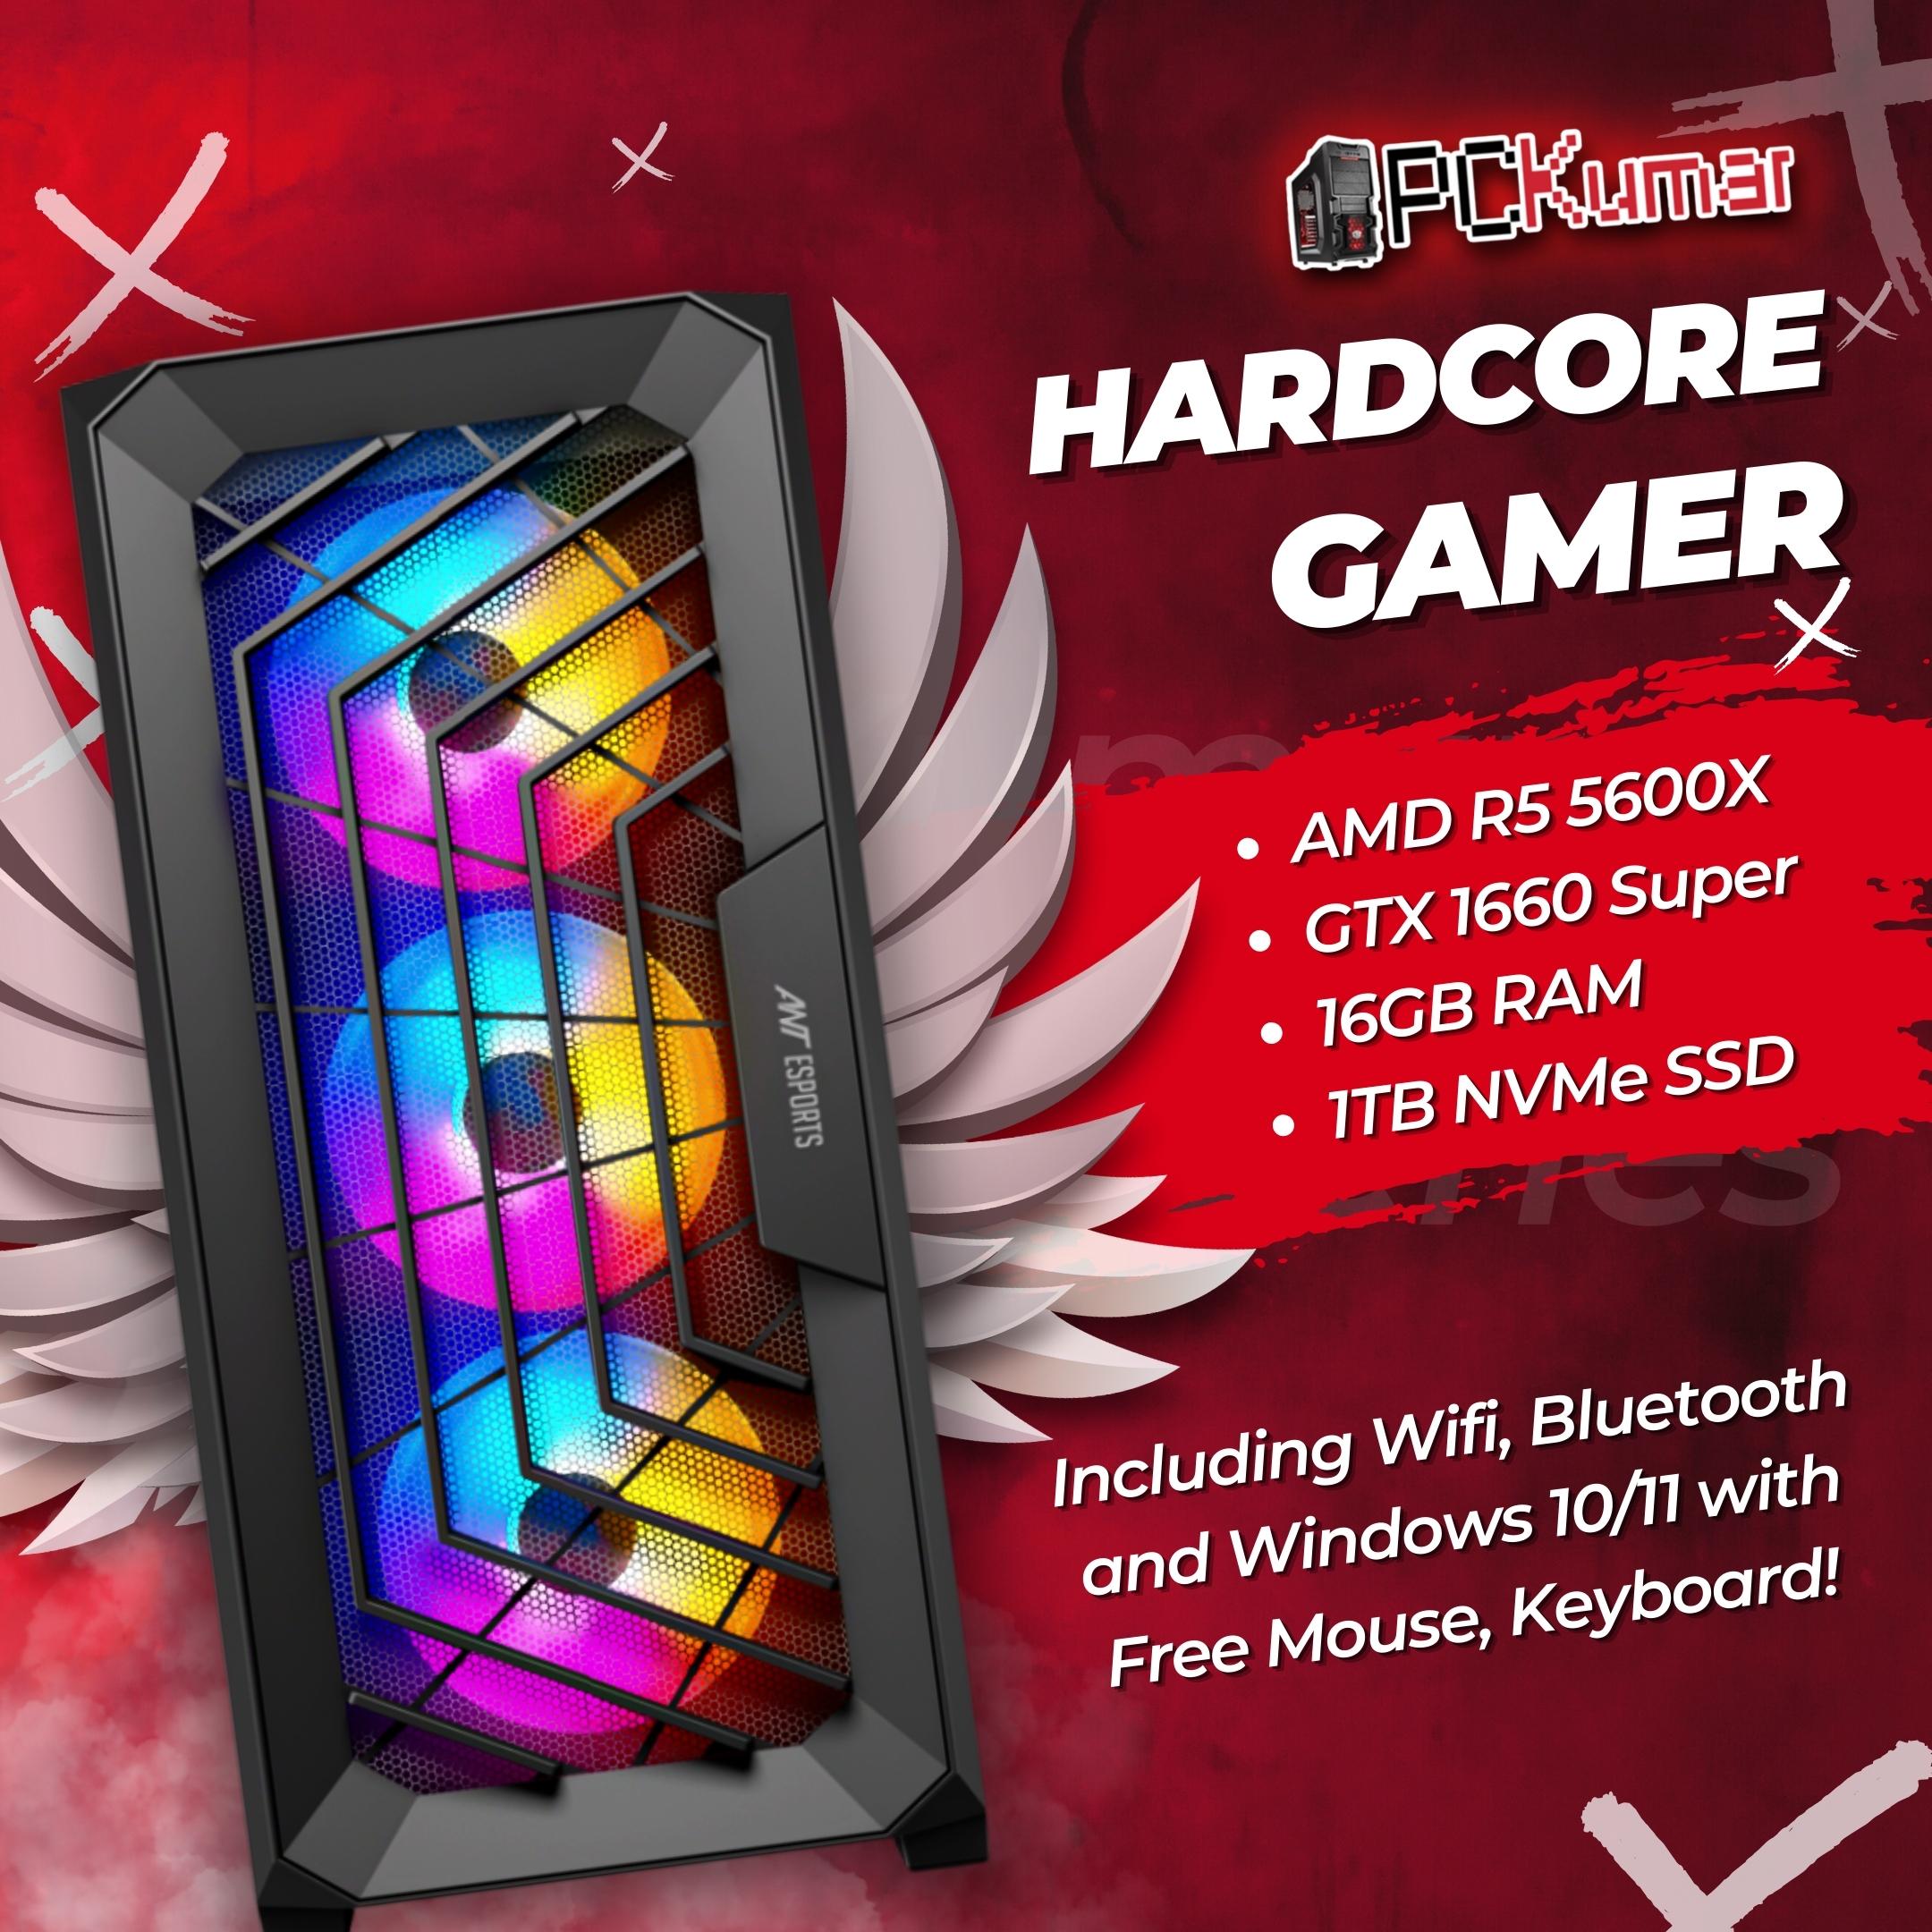 Hardcore Gamer with AMD Ryzen 5 5600X + GTX 1660 Super